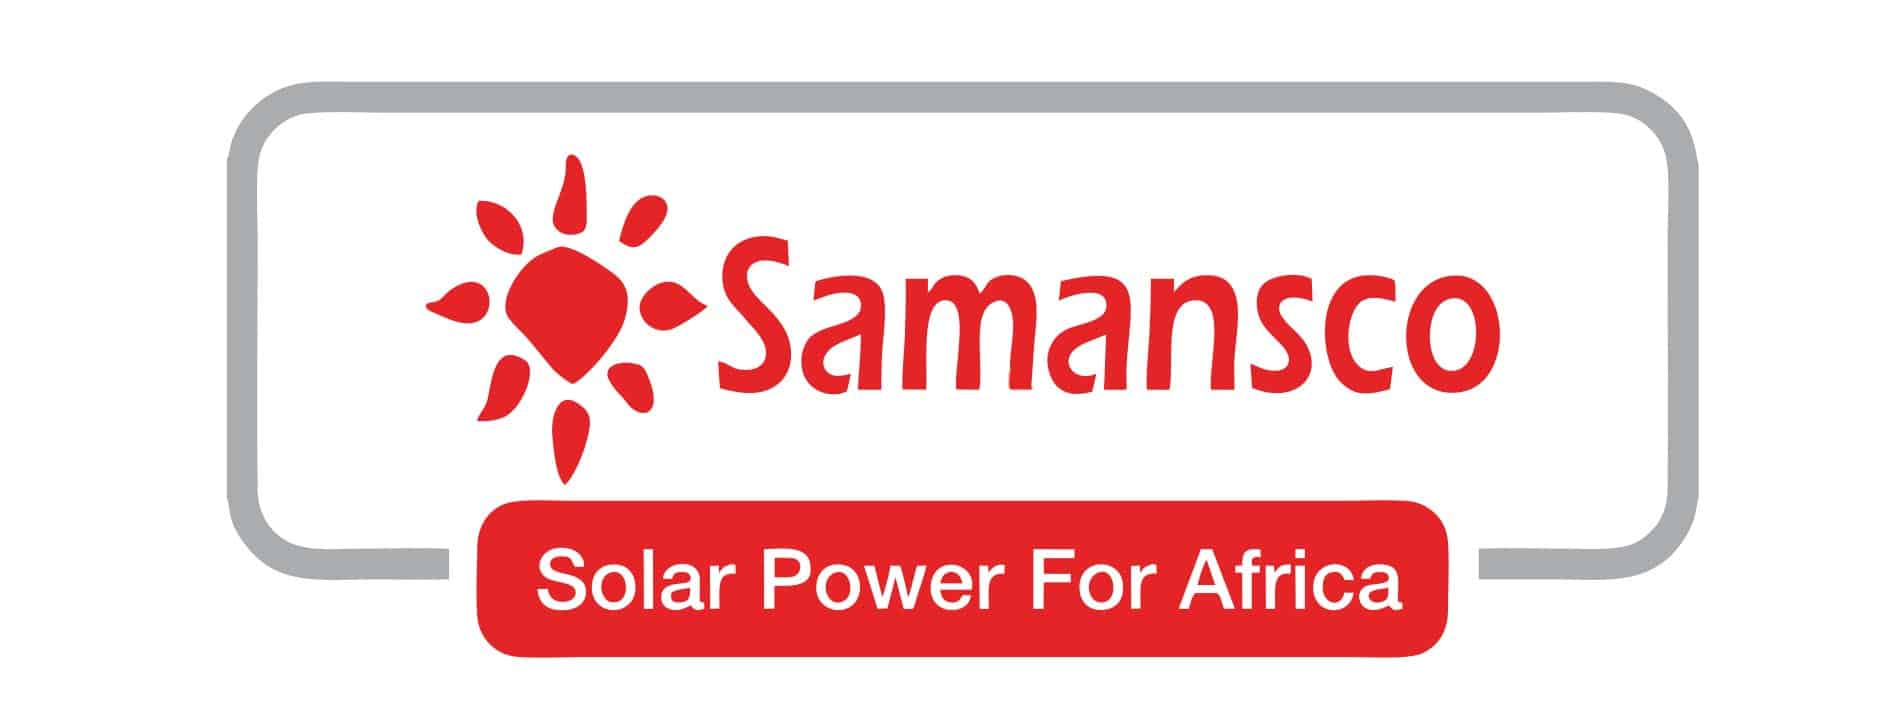 Samsansco - Solar Power for Africa